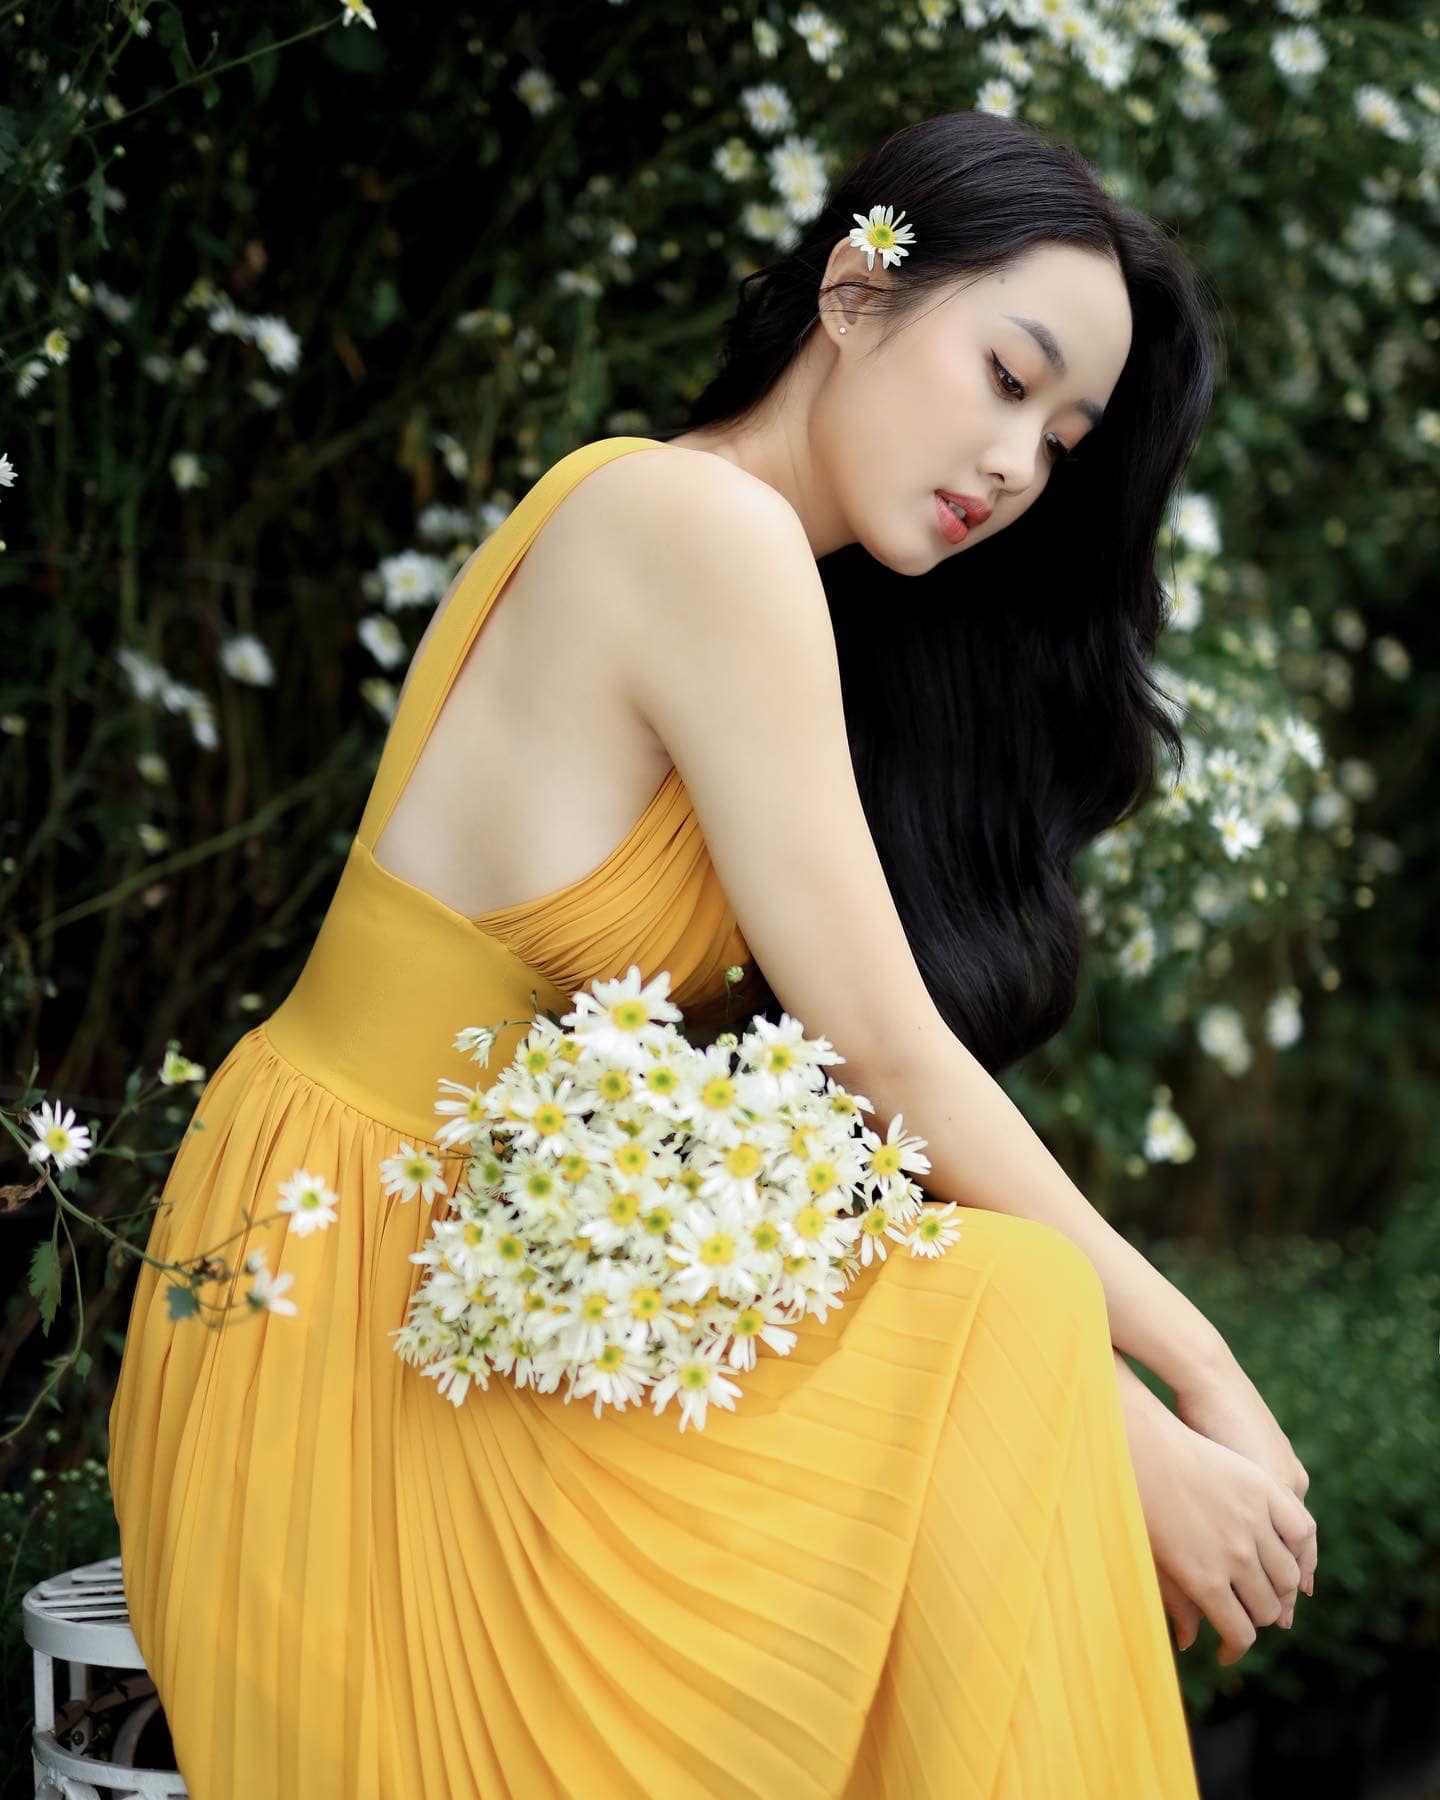 Nhan sắc người đẹp phố núi Vũ Như Quỳnh - Thí sinh được yêu thích nhất Miss World Vietnam 2022 - Ảnh 5